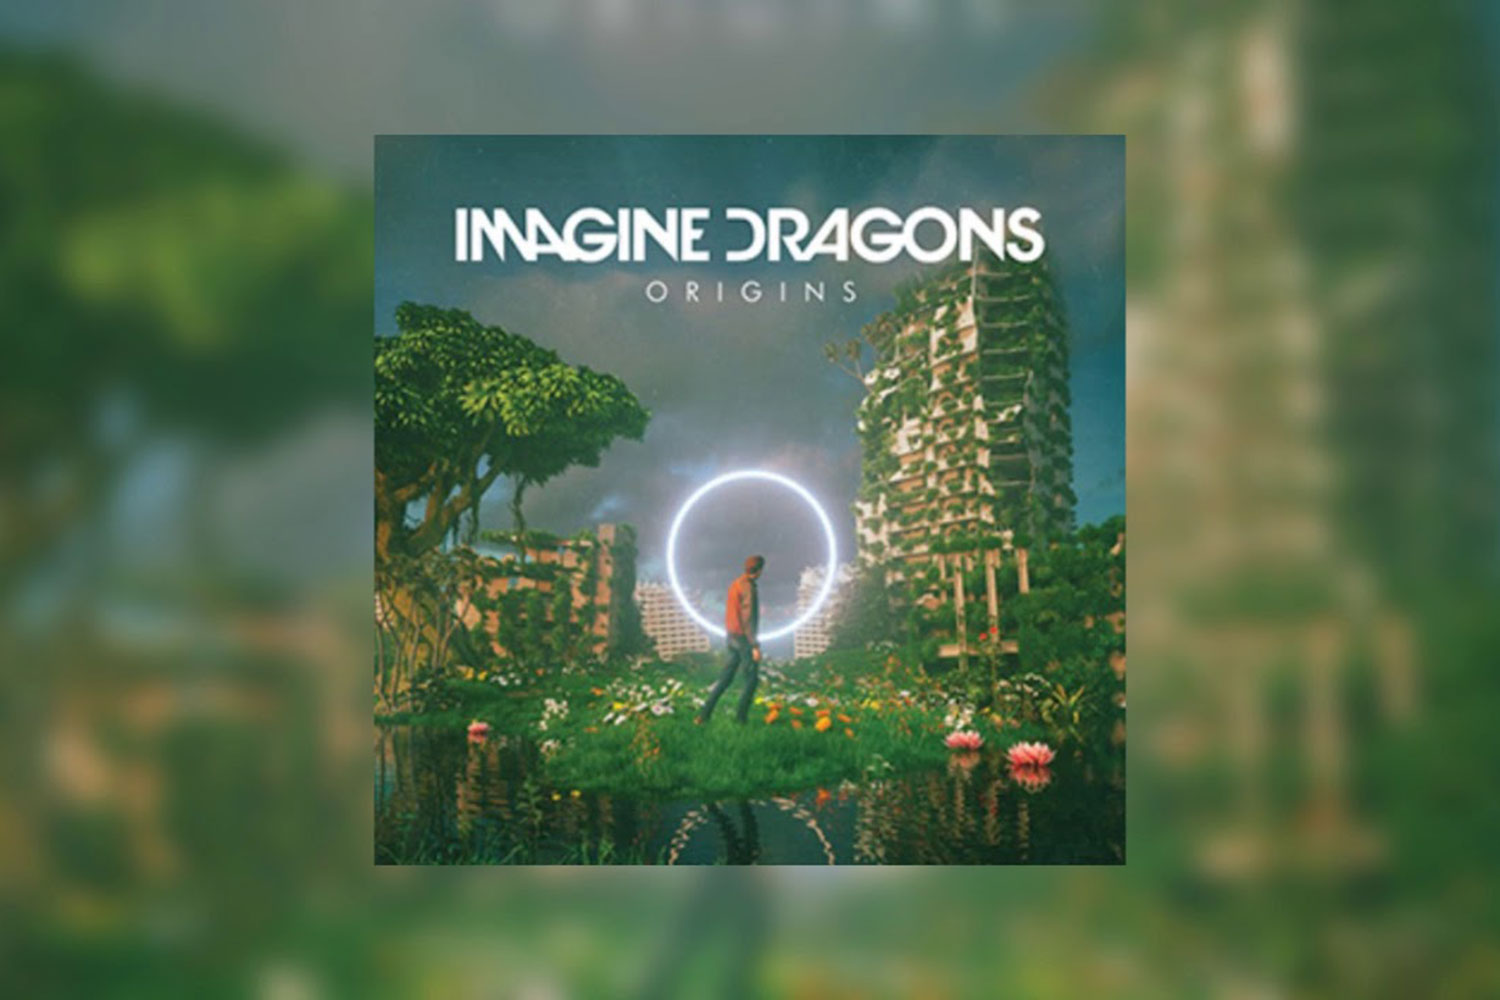 newest imagine dragons album